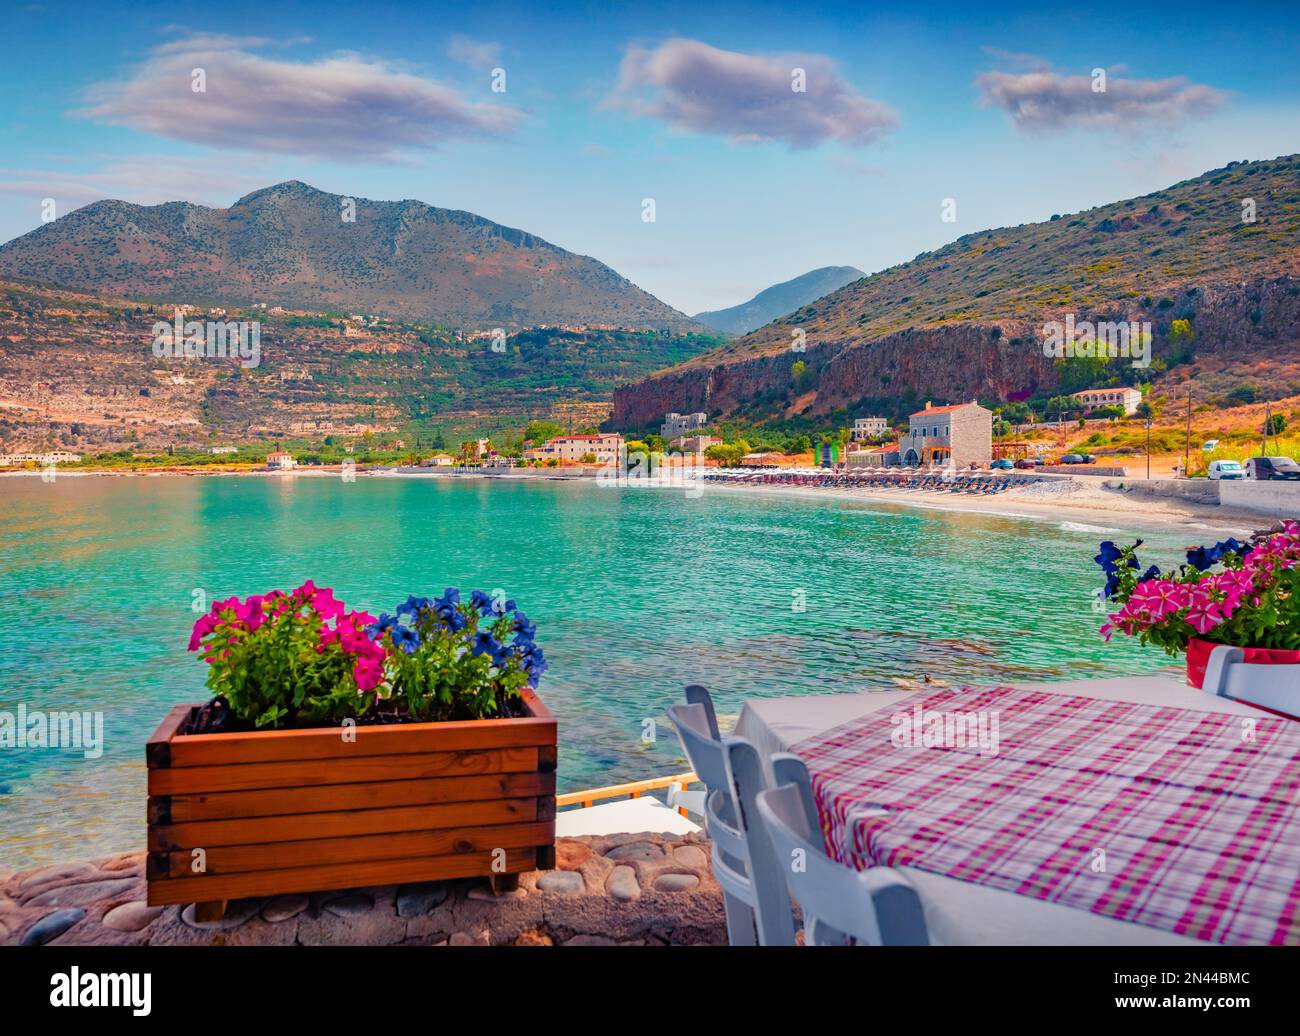 Magnifique paysage urbain d'été du village de Neo Itilo. Café hospitalier sur le rivage de la mer Ionienne avec un pot de fleurs en fleurs. Scène matinale ensoleillée de Pelo Banque D'Images